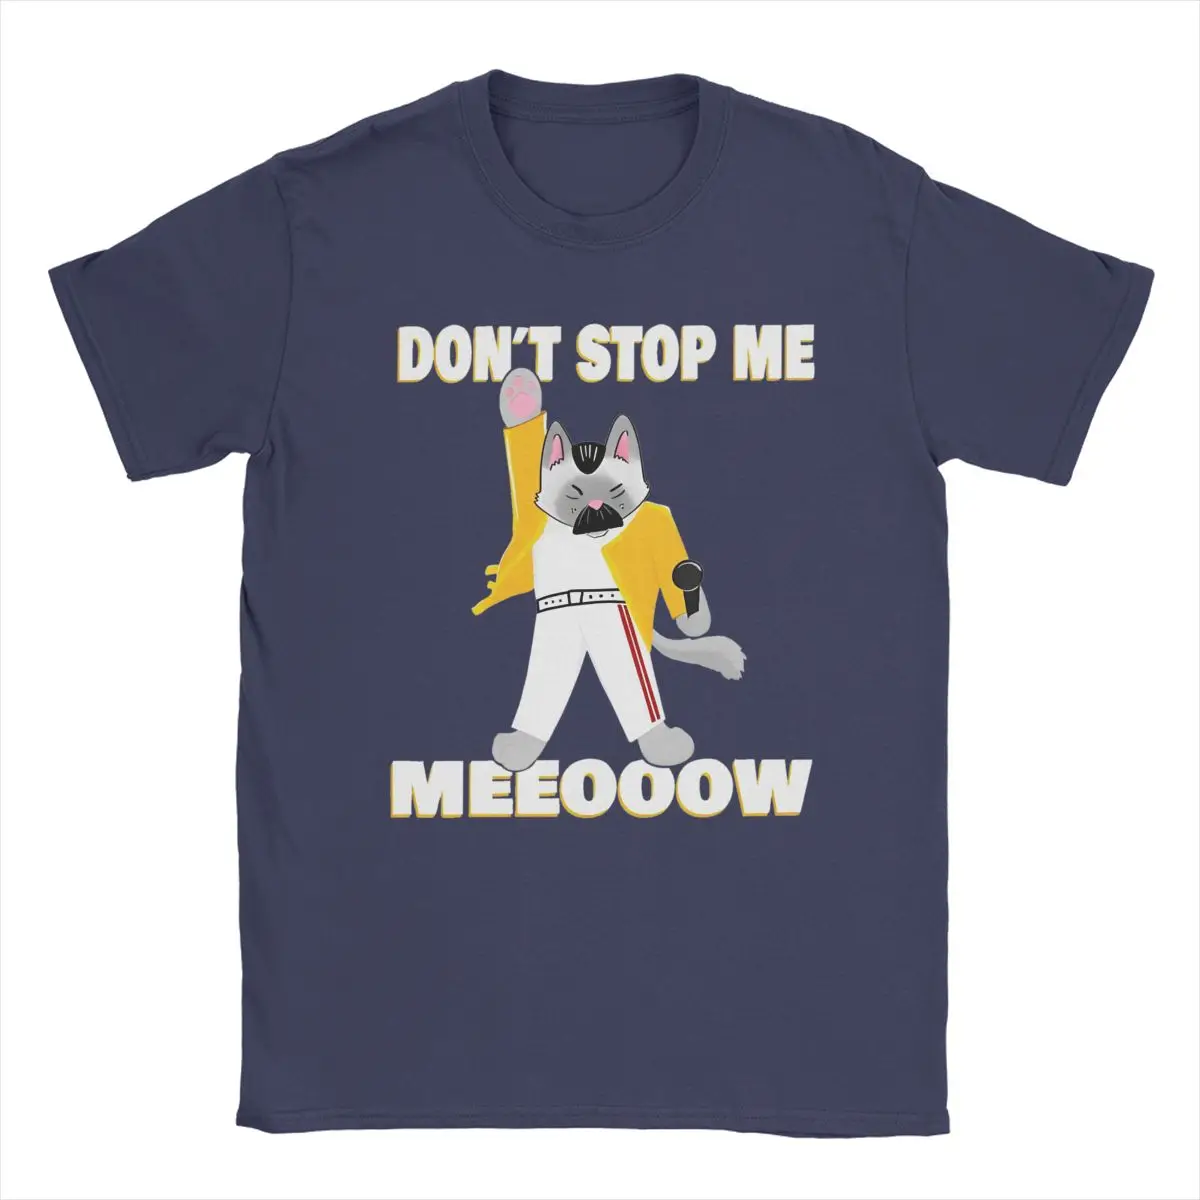 

Мужская футболка с надписью Don't Stop Meow, Поющая кошка, 100% хлопок, одежда, Забавные футболки с короткими рукавами и круглым вырезом, футболка с принтом